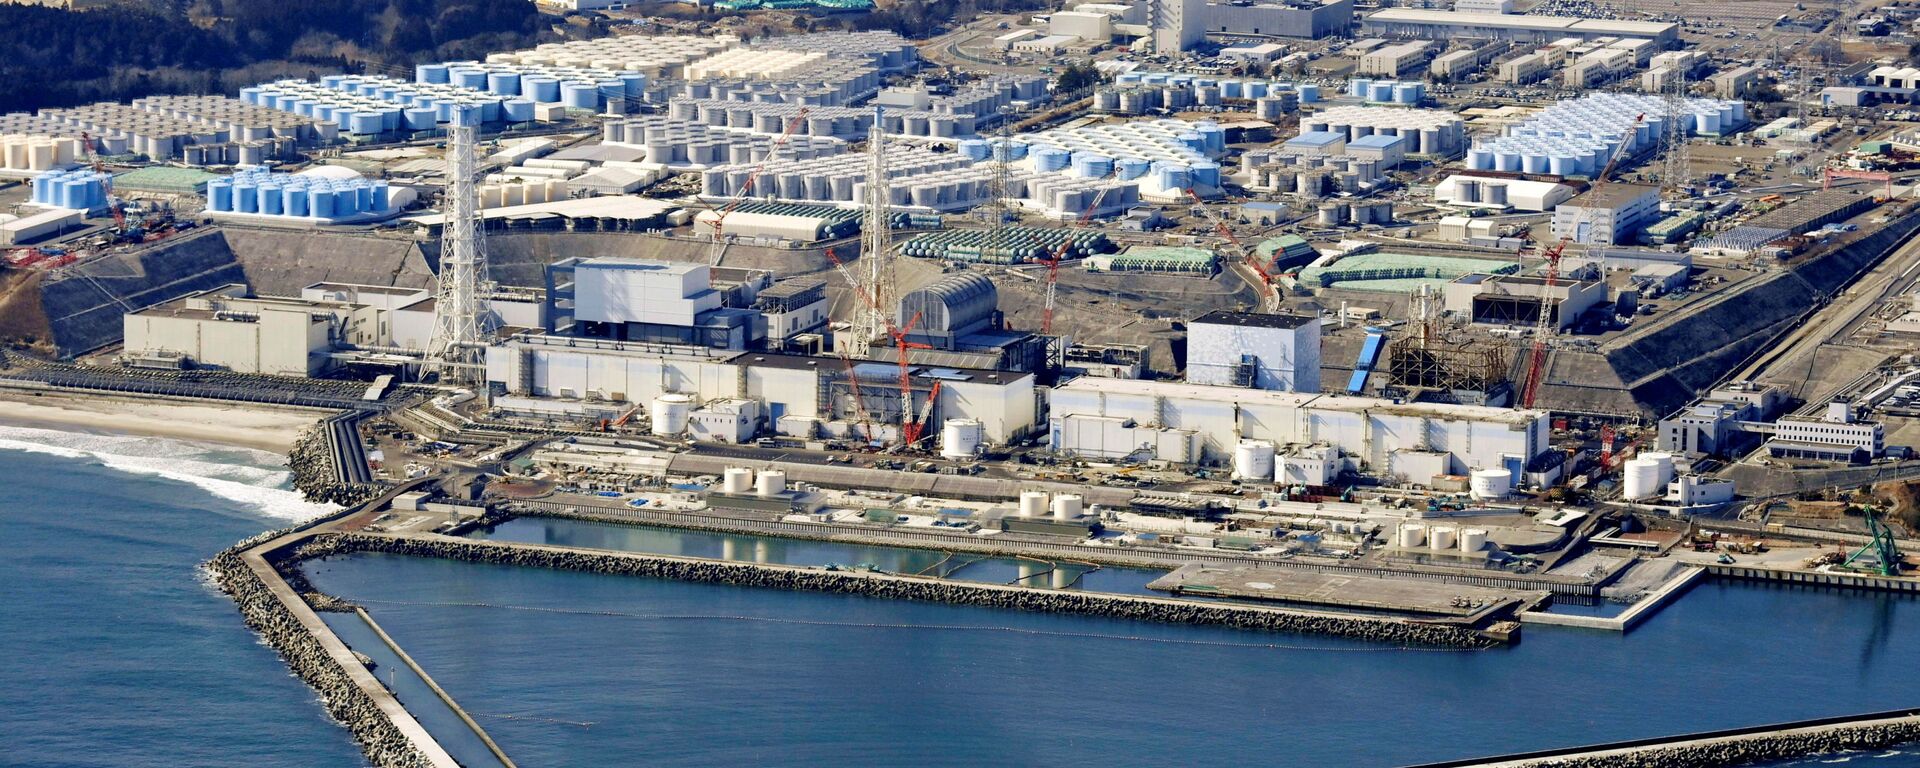 日政府向东电交付“合格证” 福岛核排污设施准备工作全部完成